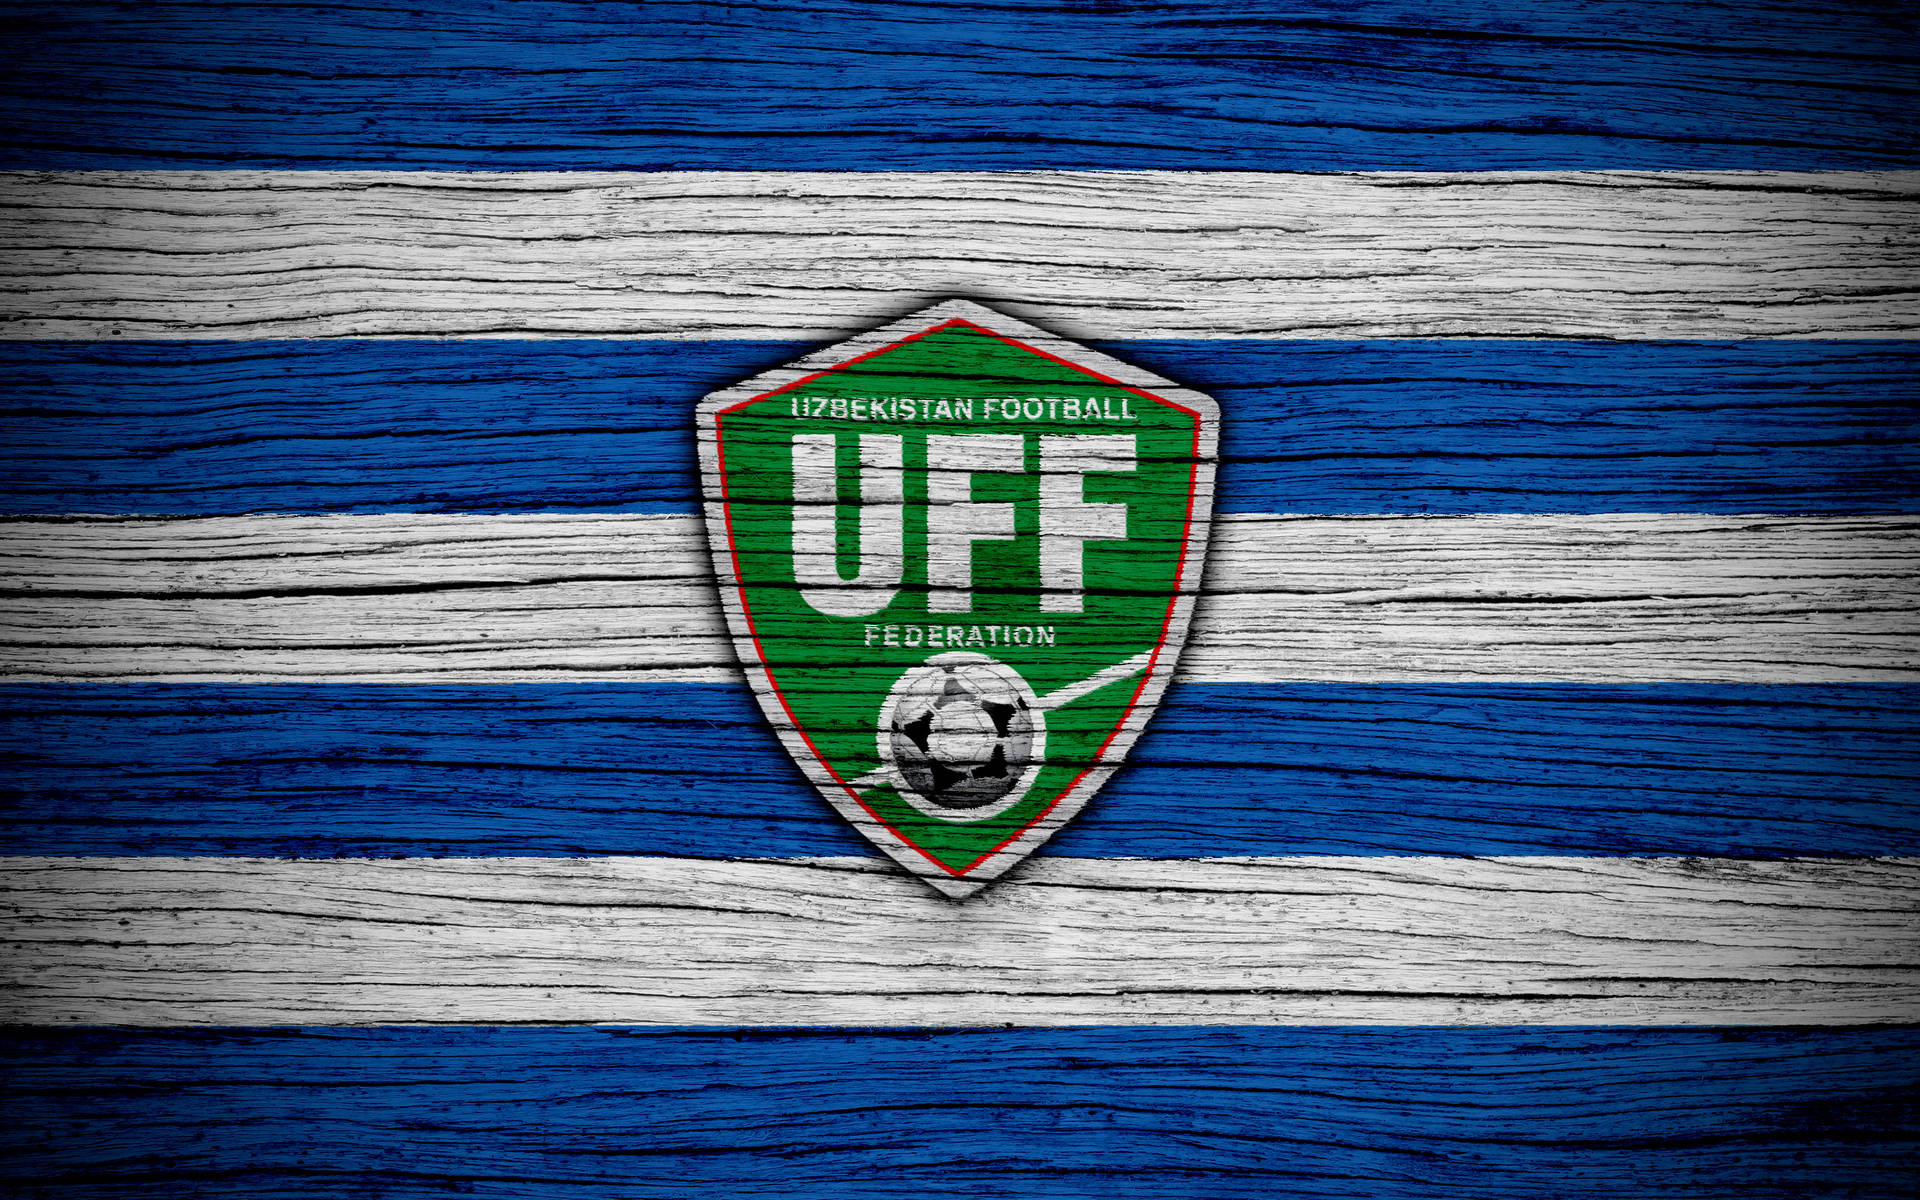 Uzbekistan Football Logo In Wooden Texture Wallpaper